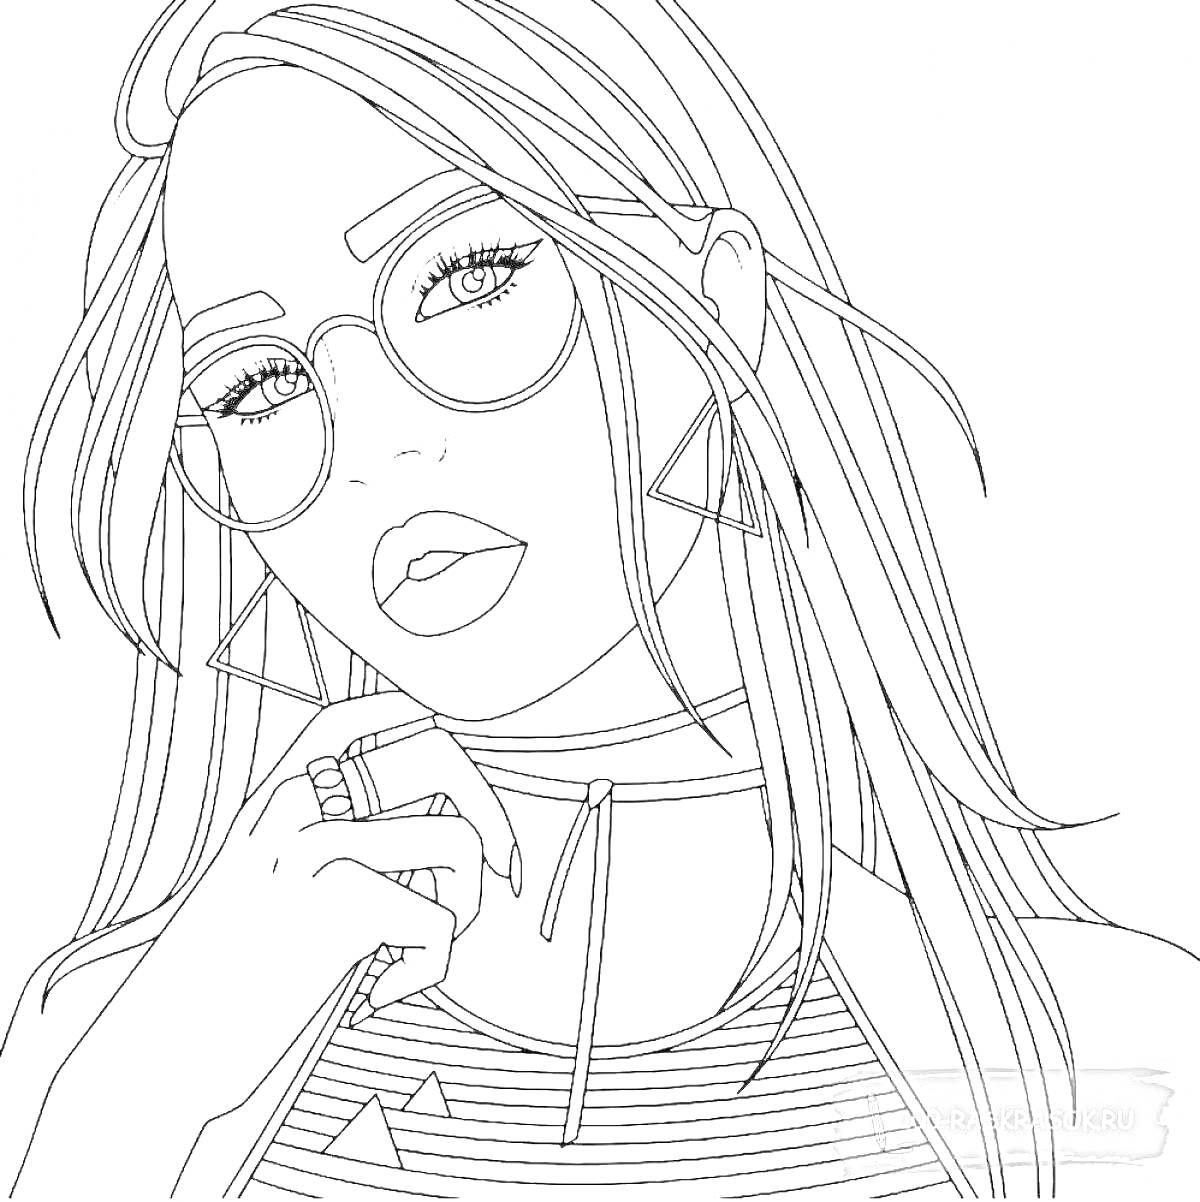 Раскраска Девушка в очках с длинными волосами, треугольными серьгами и кольцом на указательном пальце